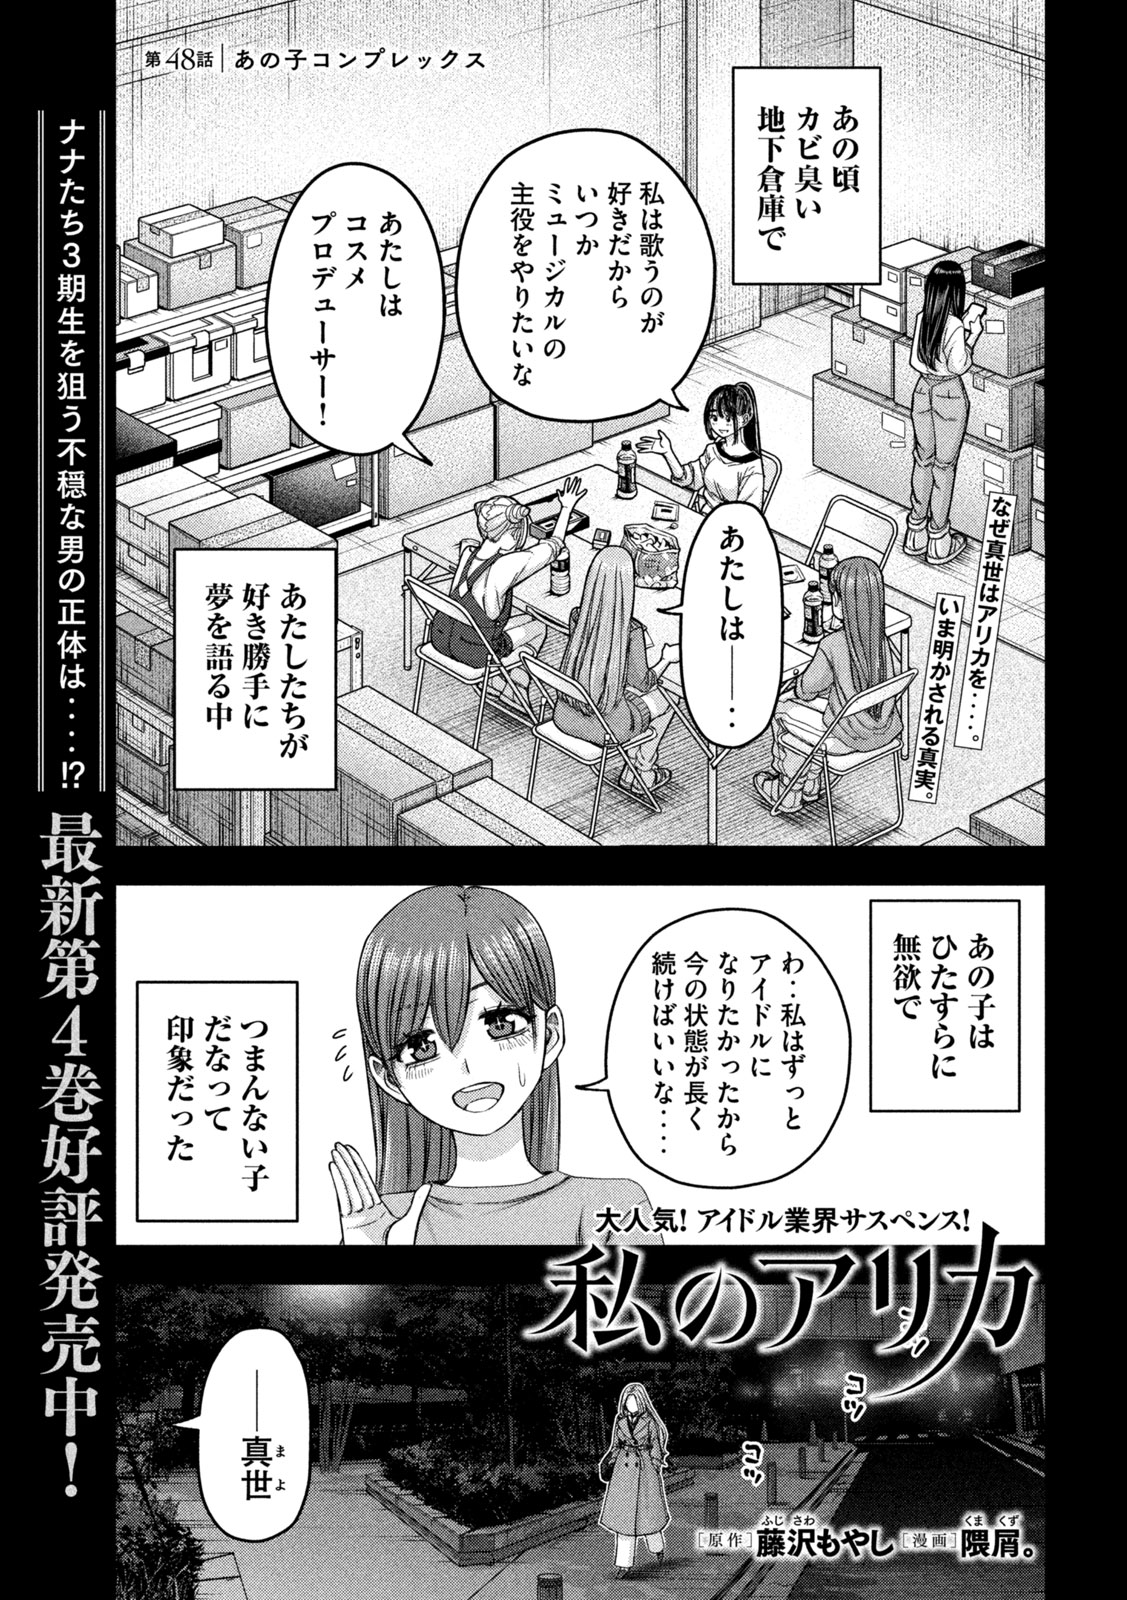 Watashi no Arika - Chapter 48 - Page 1